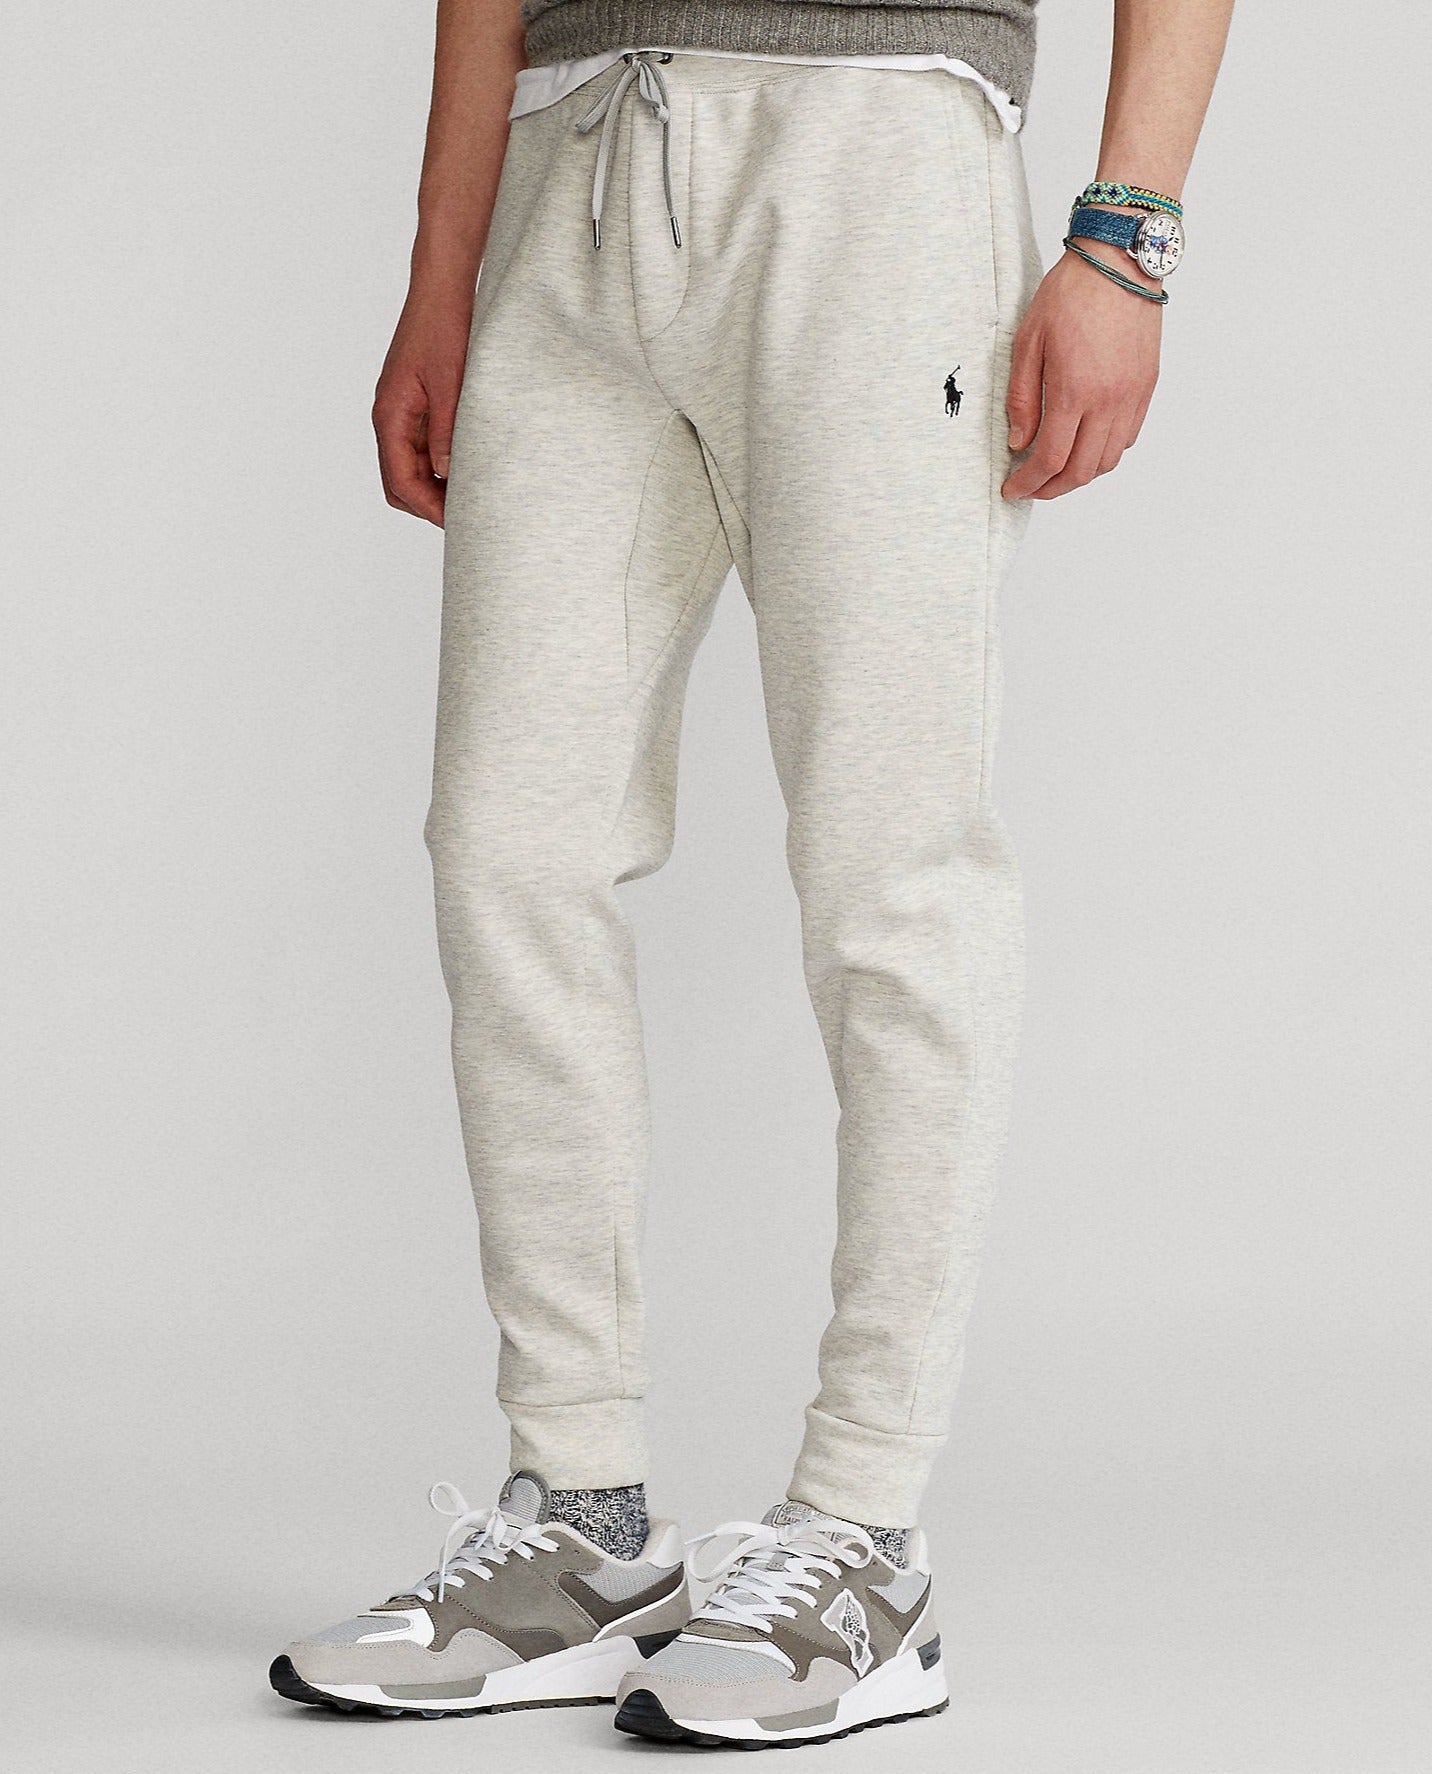 Pantalon de jogging pour homme Ralph Lauren gris clair | Georgespaul